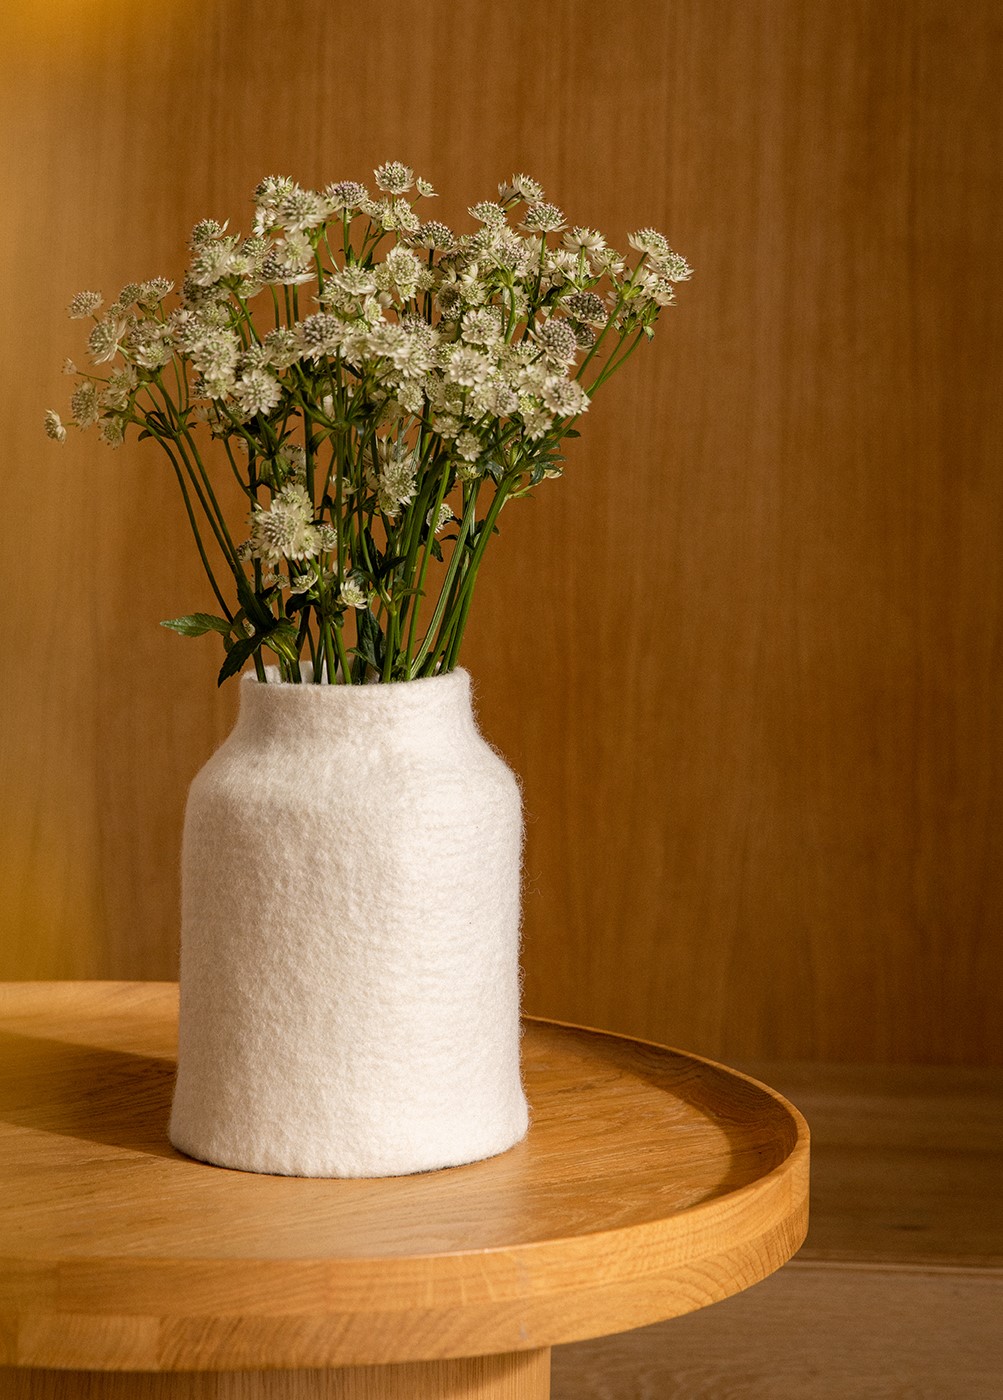 Grand vase blanc en laine bouillie posé sur une table basse ronde dans le salon